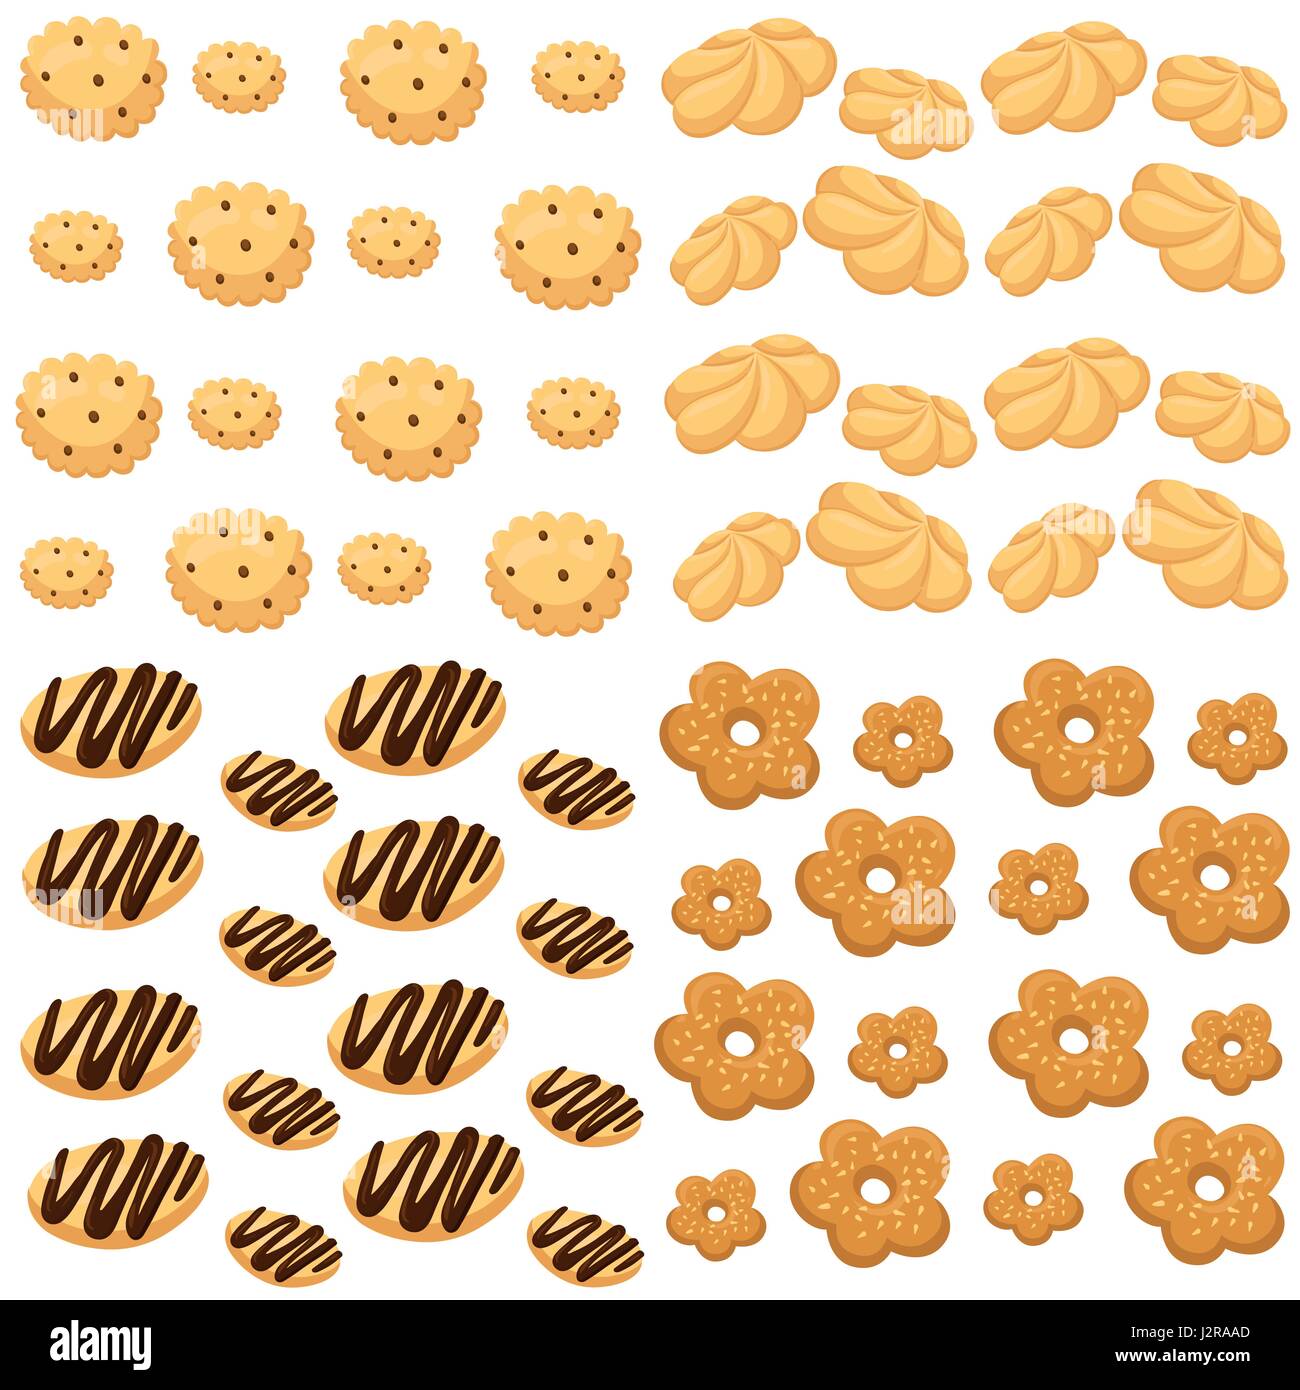 Cookies gâteau d'illustration vectorielle, isolé sur blanc Assortiment de 9 délicieux biscuits de forme divers et de goût Illustration de Vecteur